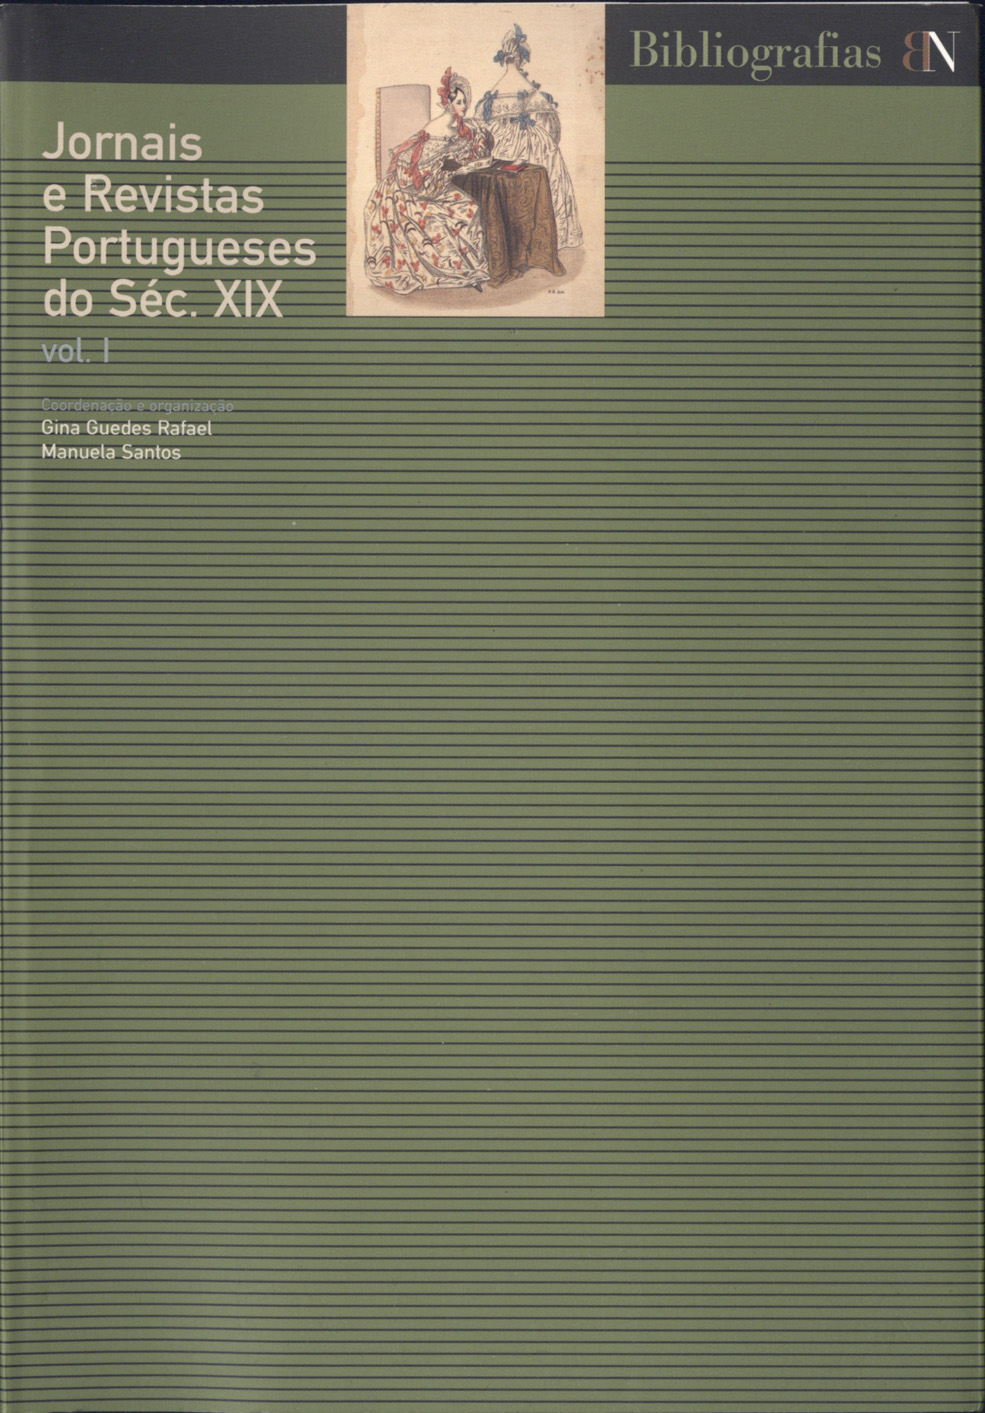 Jornais e Revistas Portugueses do Séc. XIX.